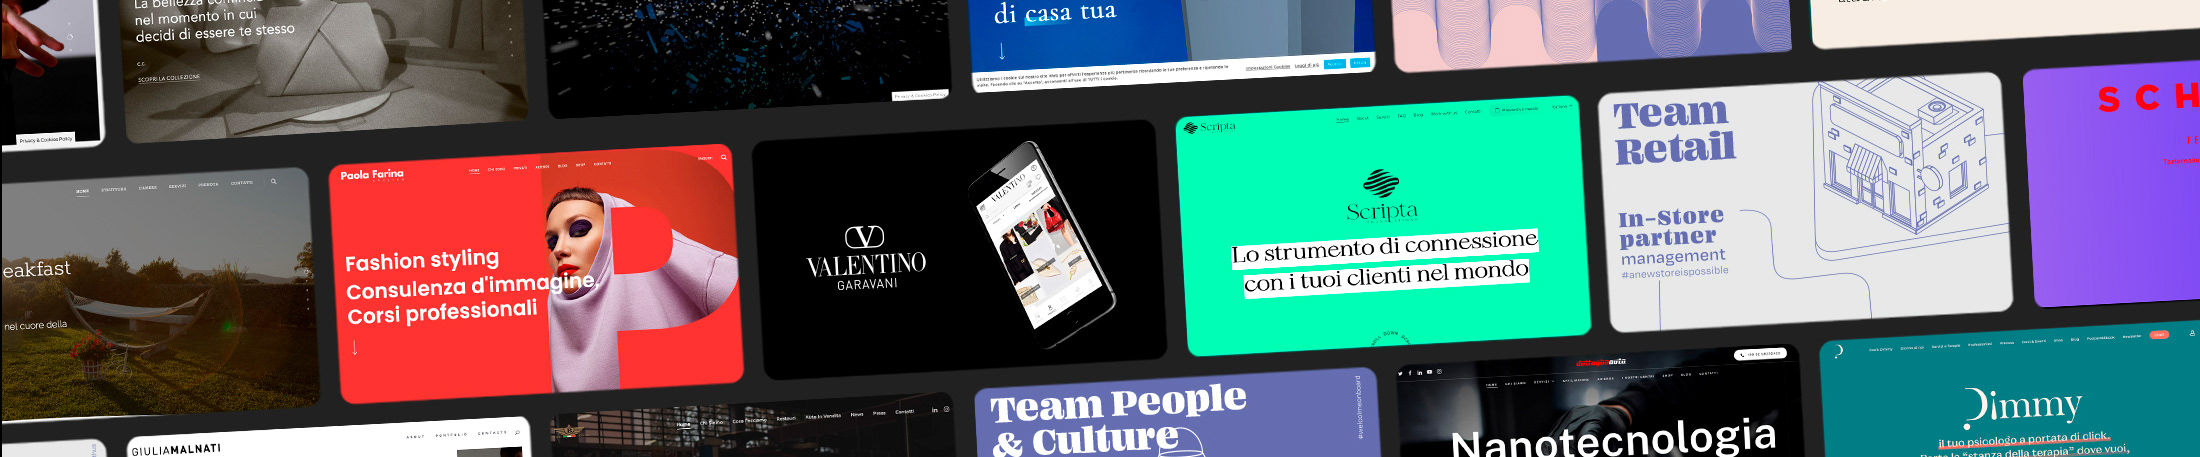 Stefano De Rossi's profile banner